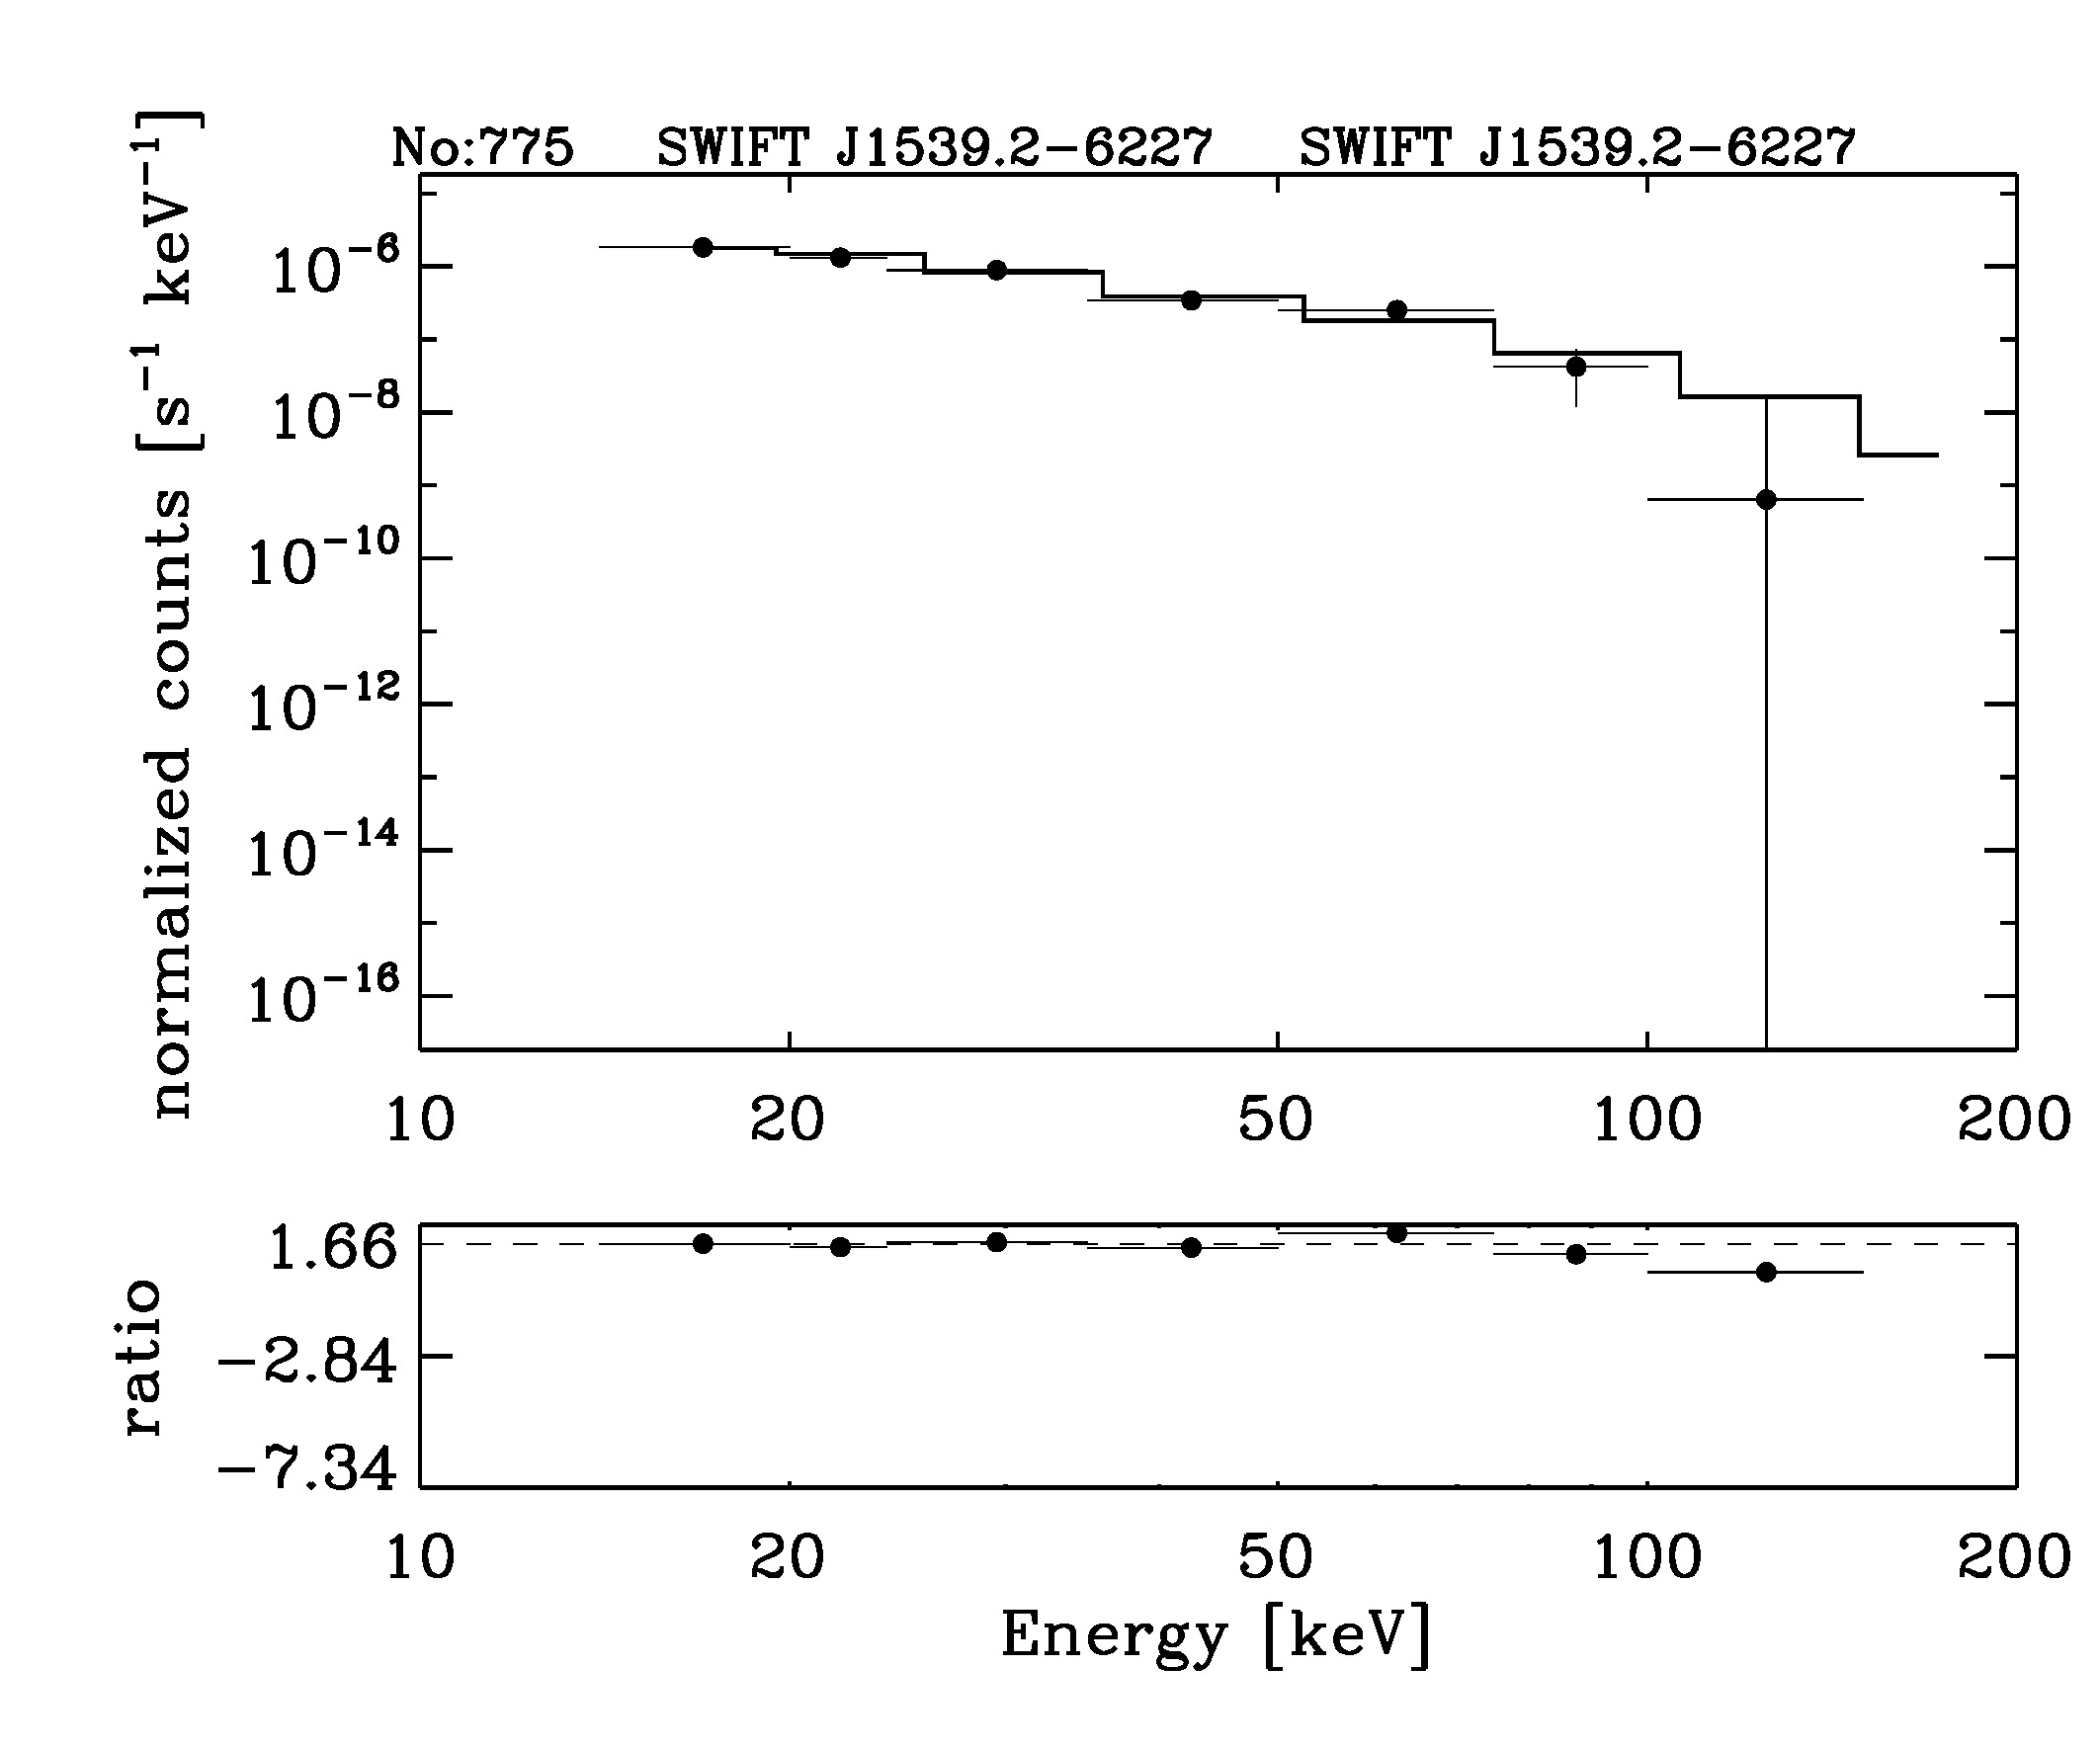 BAT Spectrum for SWIFT J1539.2-6227